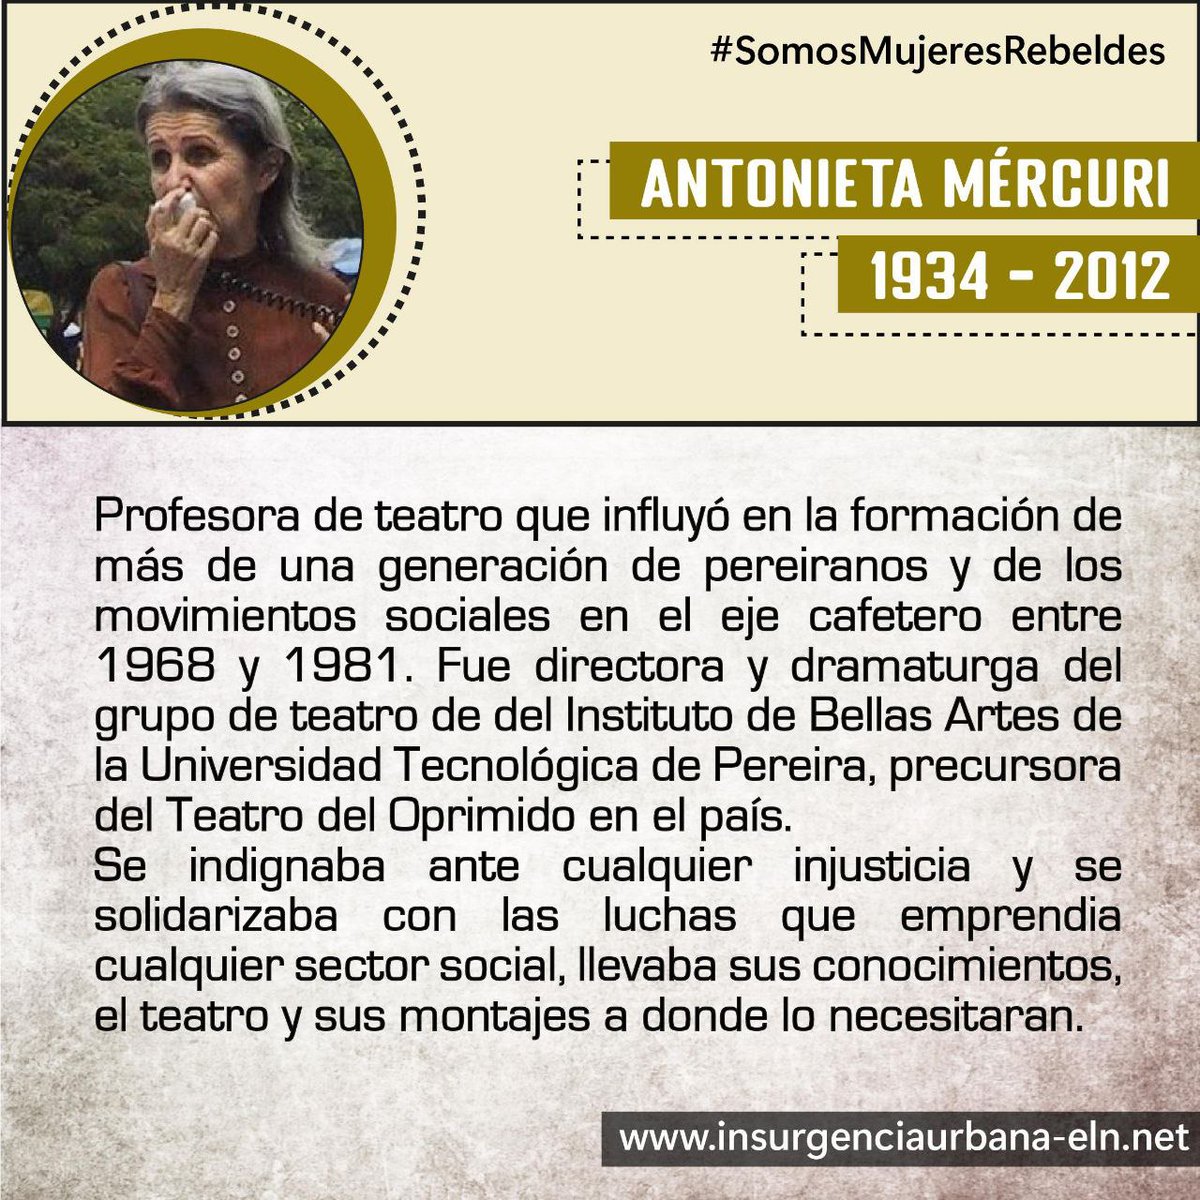 #SomosMujeresRebeldes

ANTONIETA MÉRCURI
🎭 Artista y luchadora social. Precursora del Teatro del Oprimido en Colombia.

#SiempreJuntoAlPueblo
#InsurgenciaUrbana
#ELN60Años